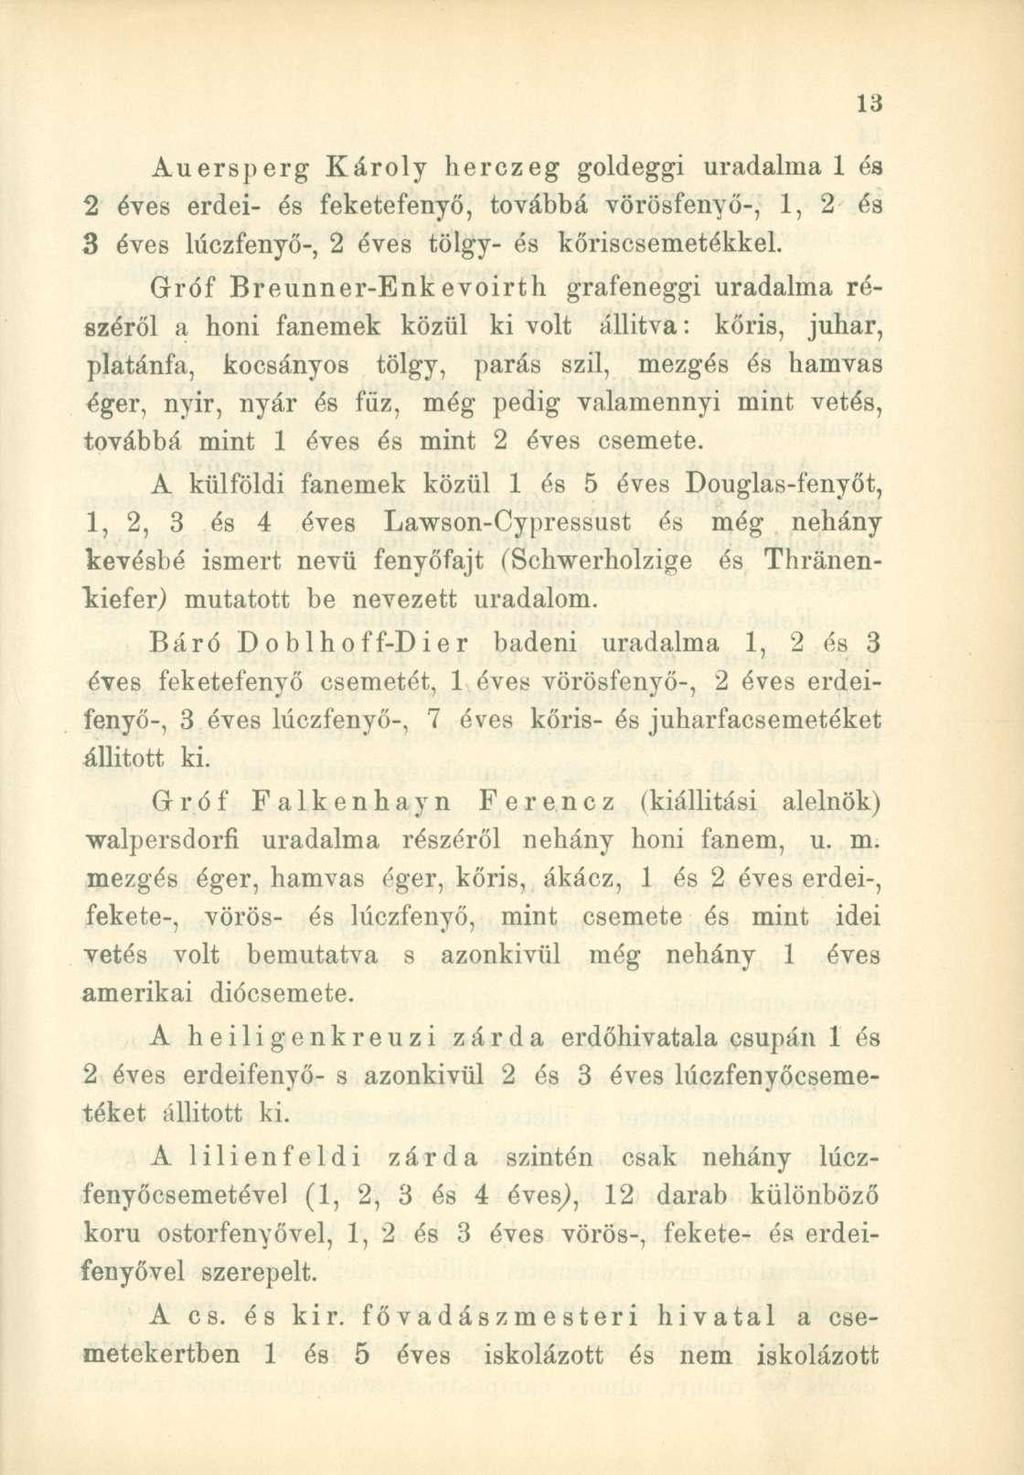 Auersperg Károly herczeg goldeggi uradalma 1 és 2 éves erdei- és feketefenyő, továbbá vörösfenyő-, 1, 2 és 3 éves lúczfenyő-, 2 éves tölgy- és kőriscsemetékkel.